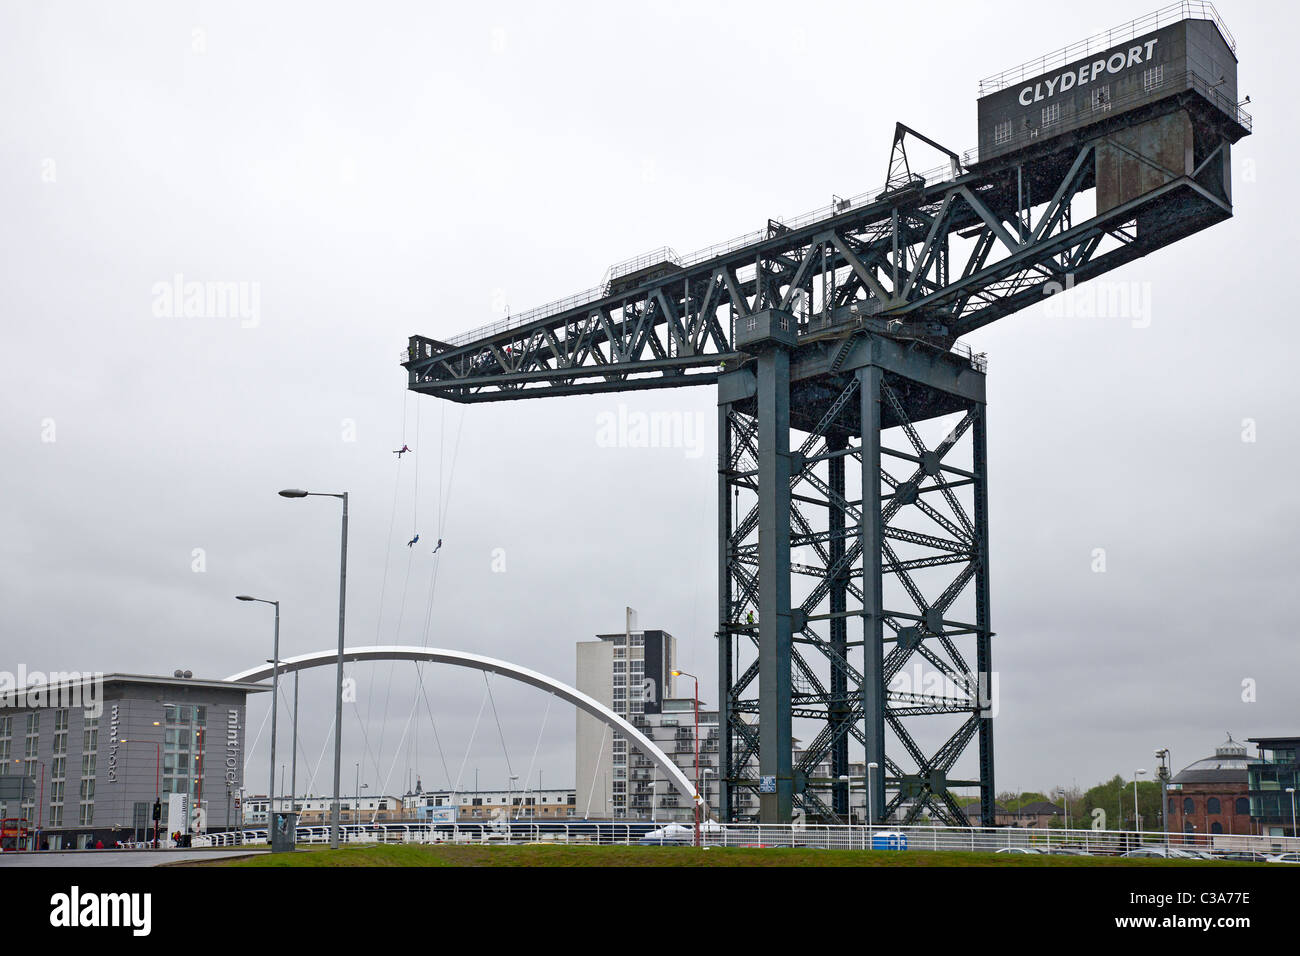 Drei Personen vervollständigen eine Nächstenliebe Abseilen aus Finnieston Crane, Glasgow, vor der Clyde Arc-Brücke. Schottland, Großbritannien. Stockfoto